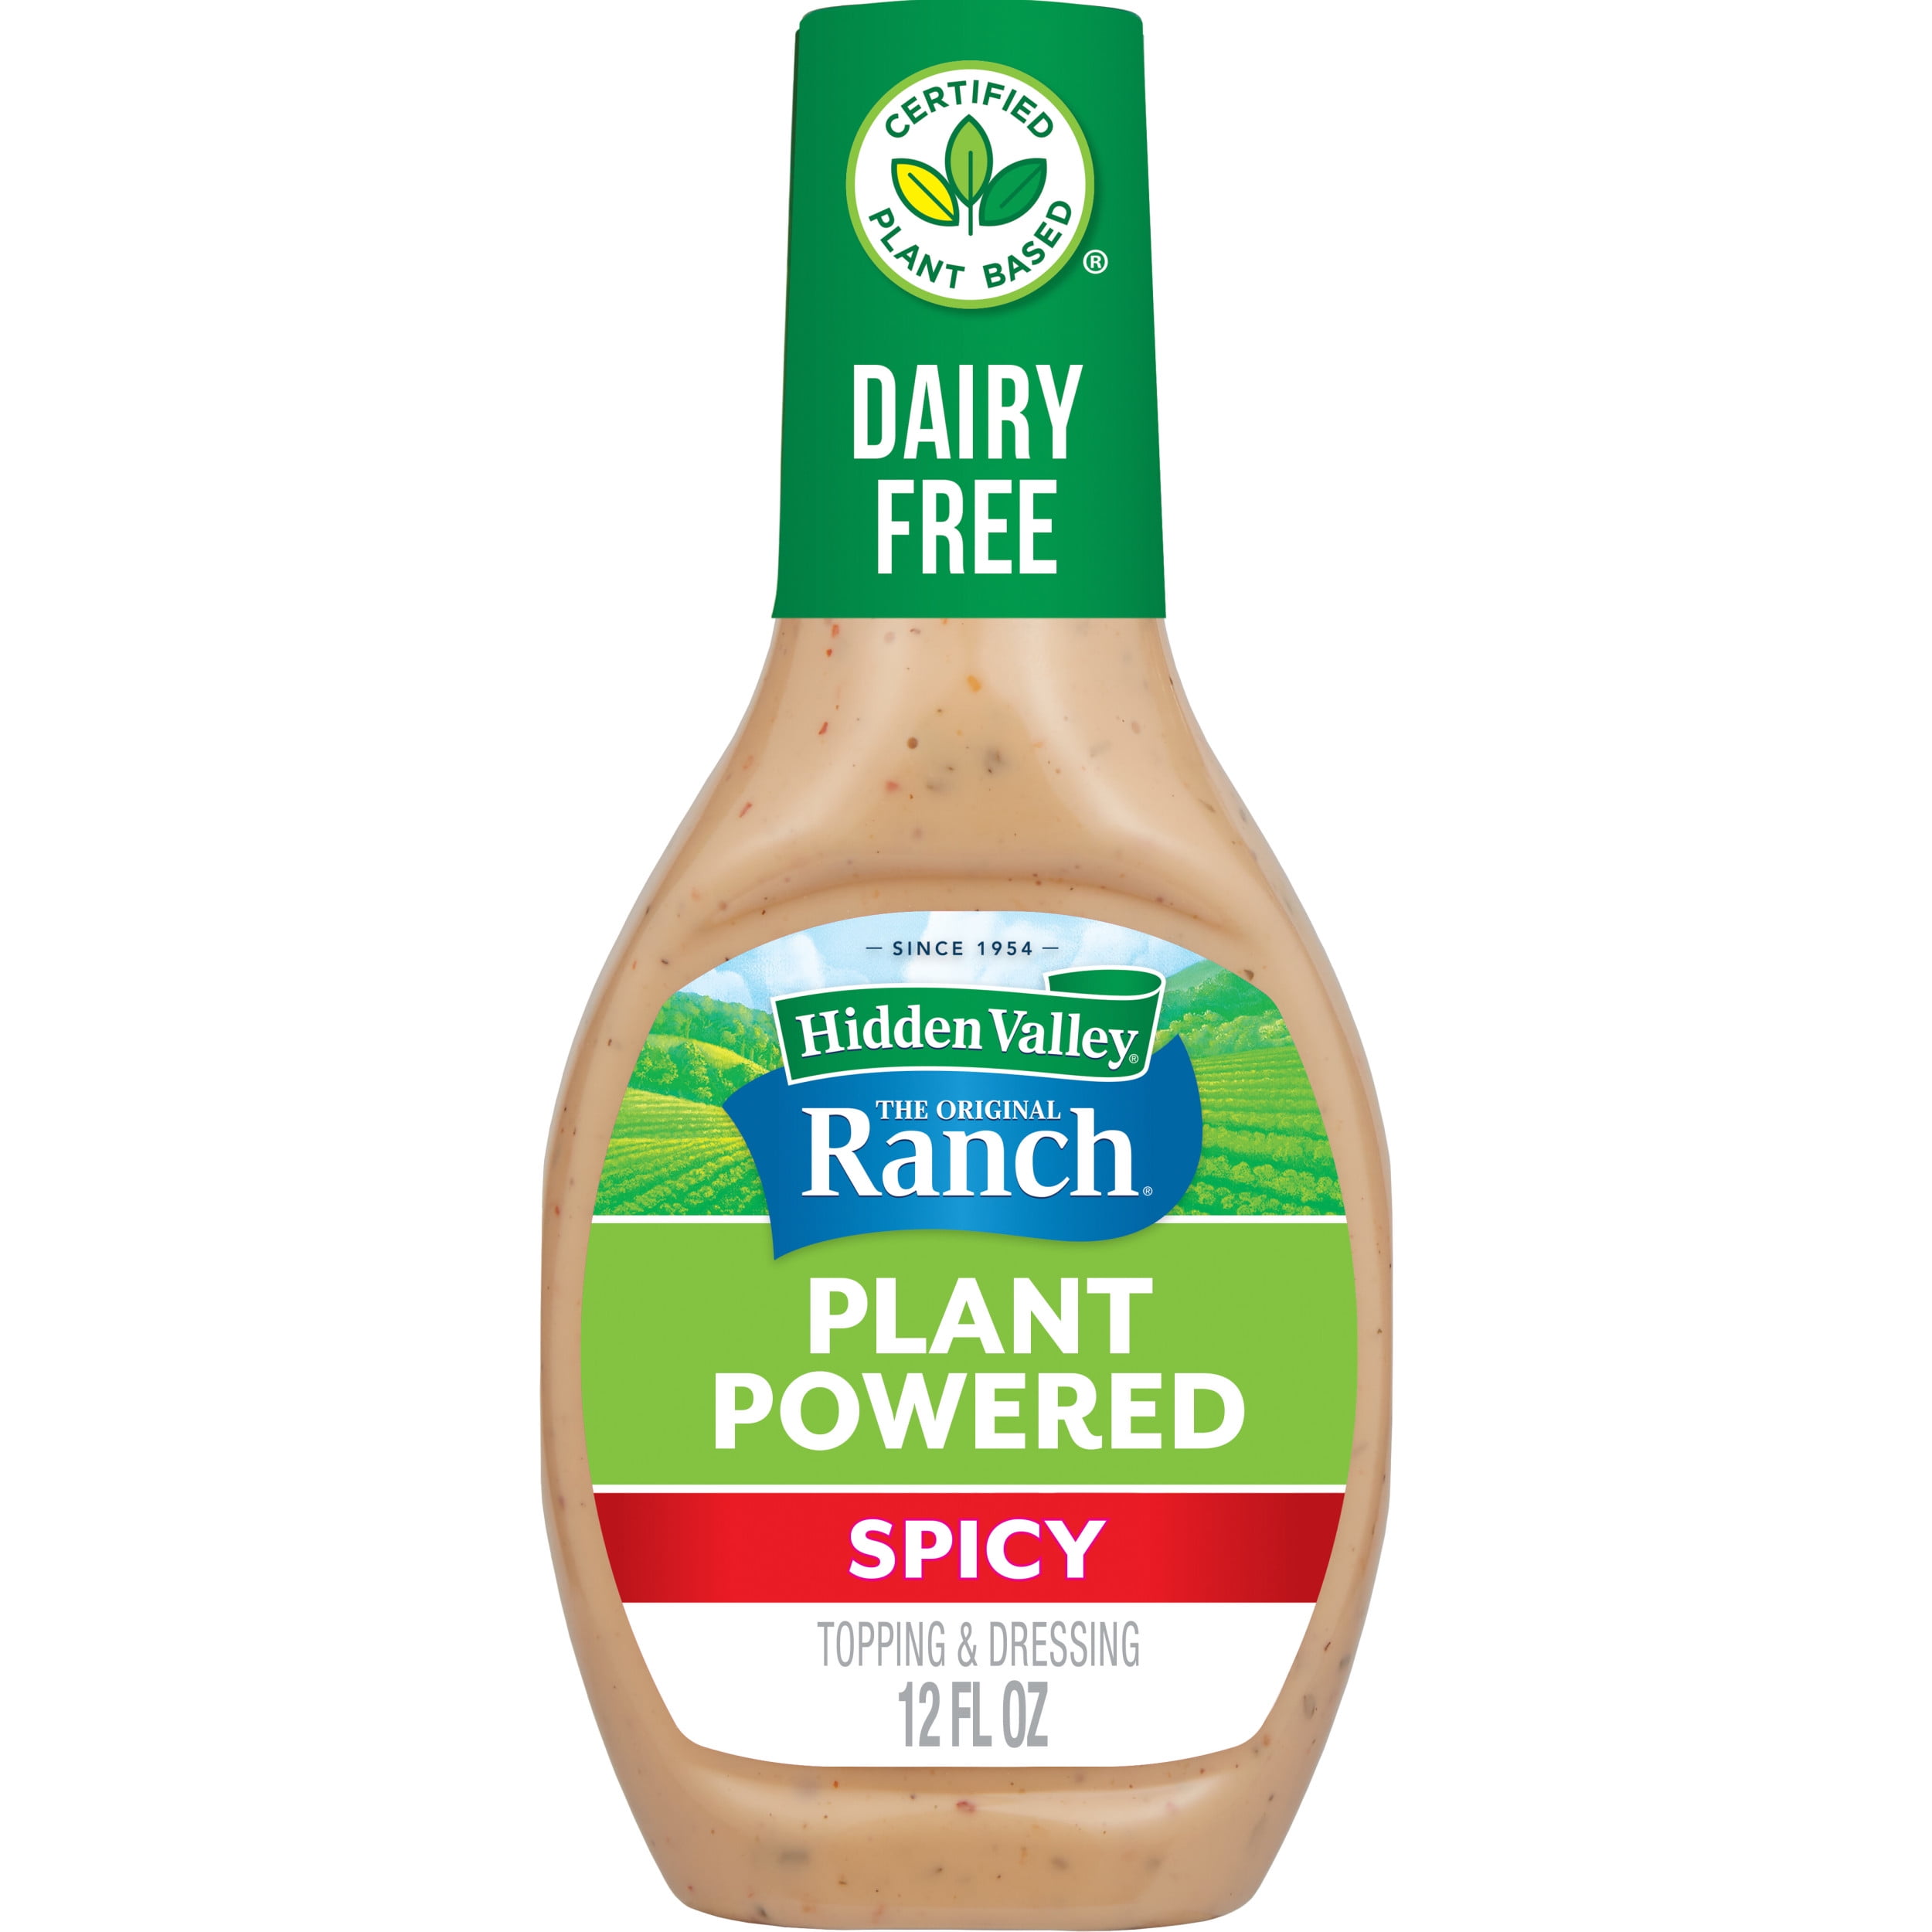 Hidden Valley Secret Sauce, Smokehouse, Ranch - 12 fl oz